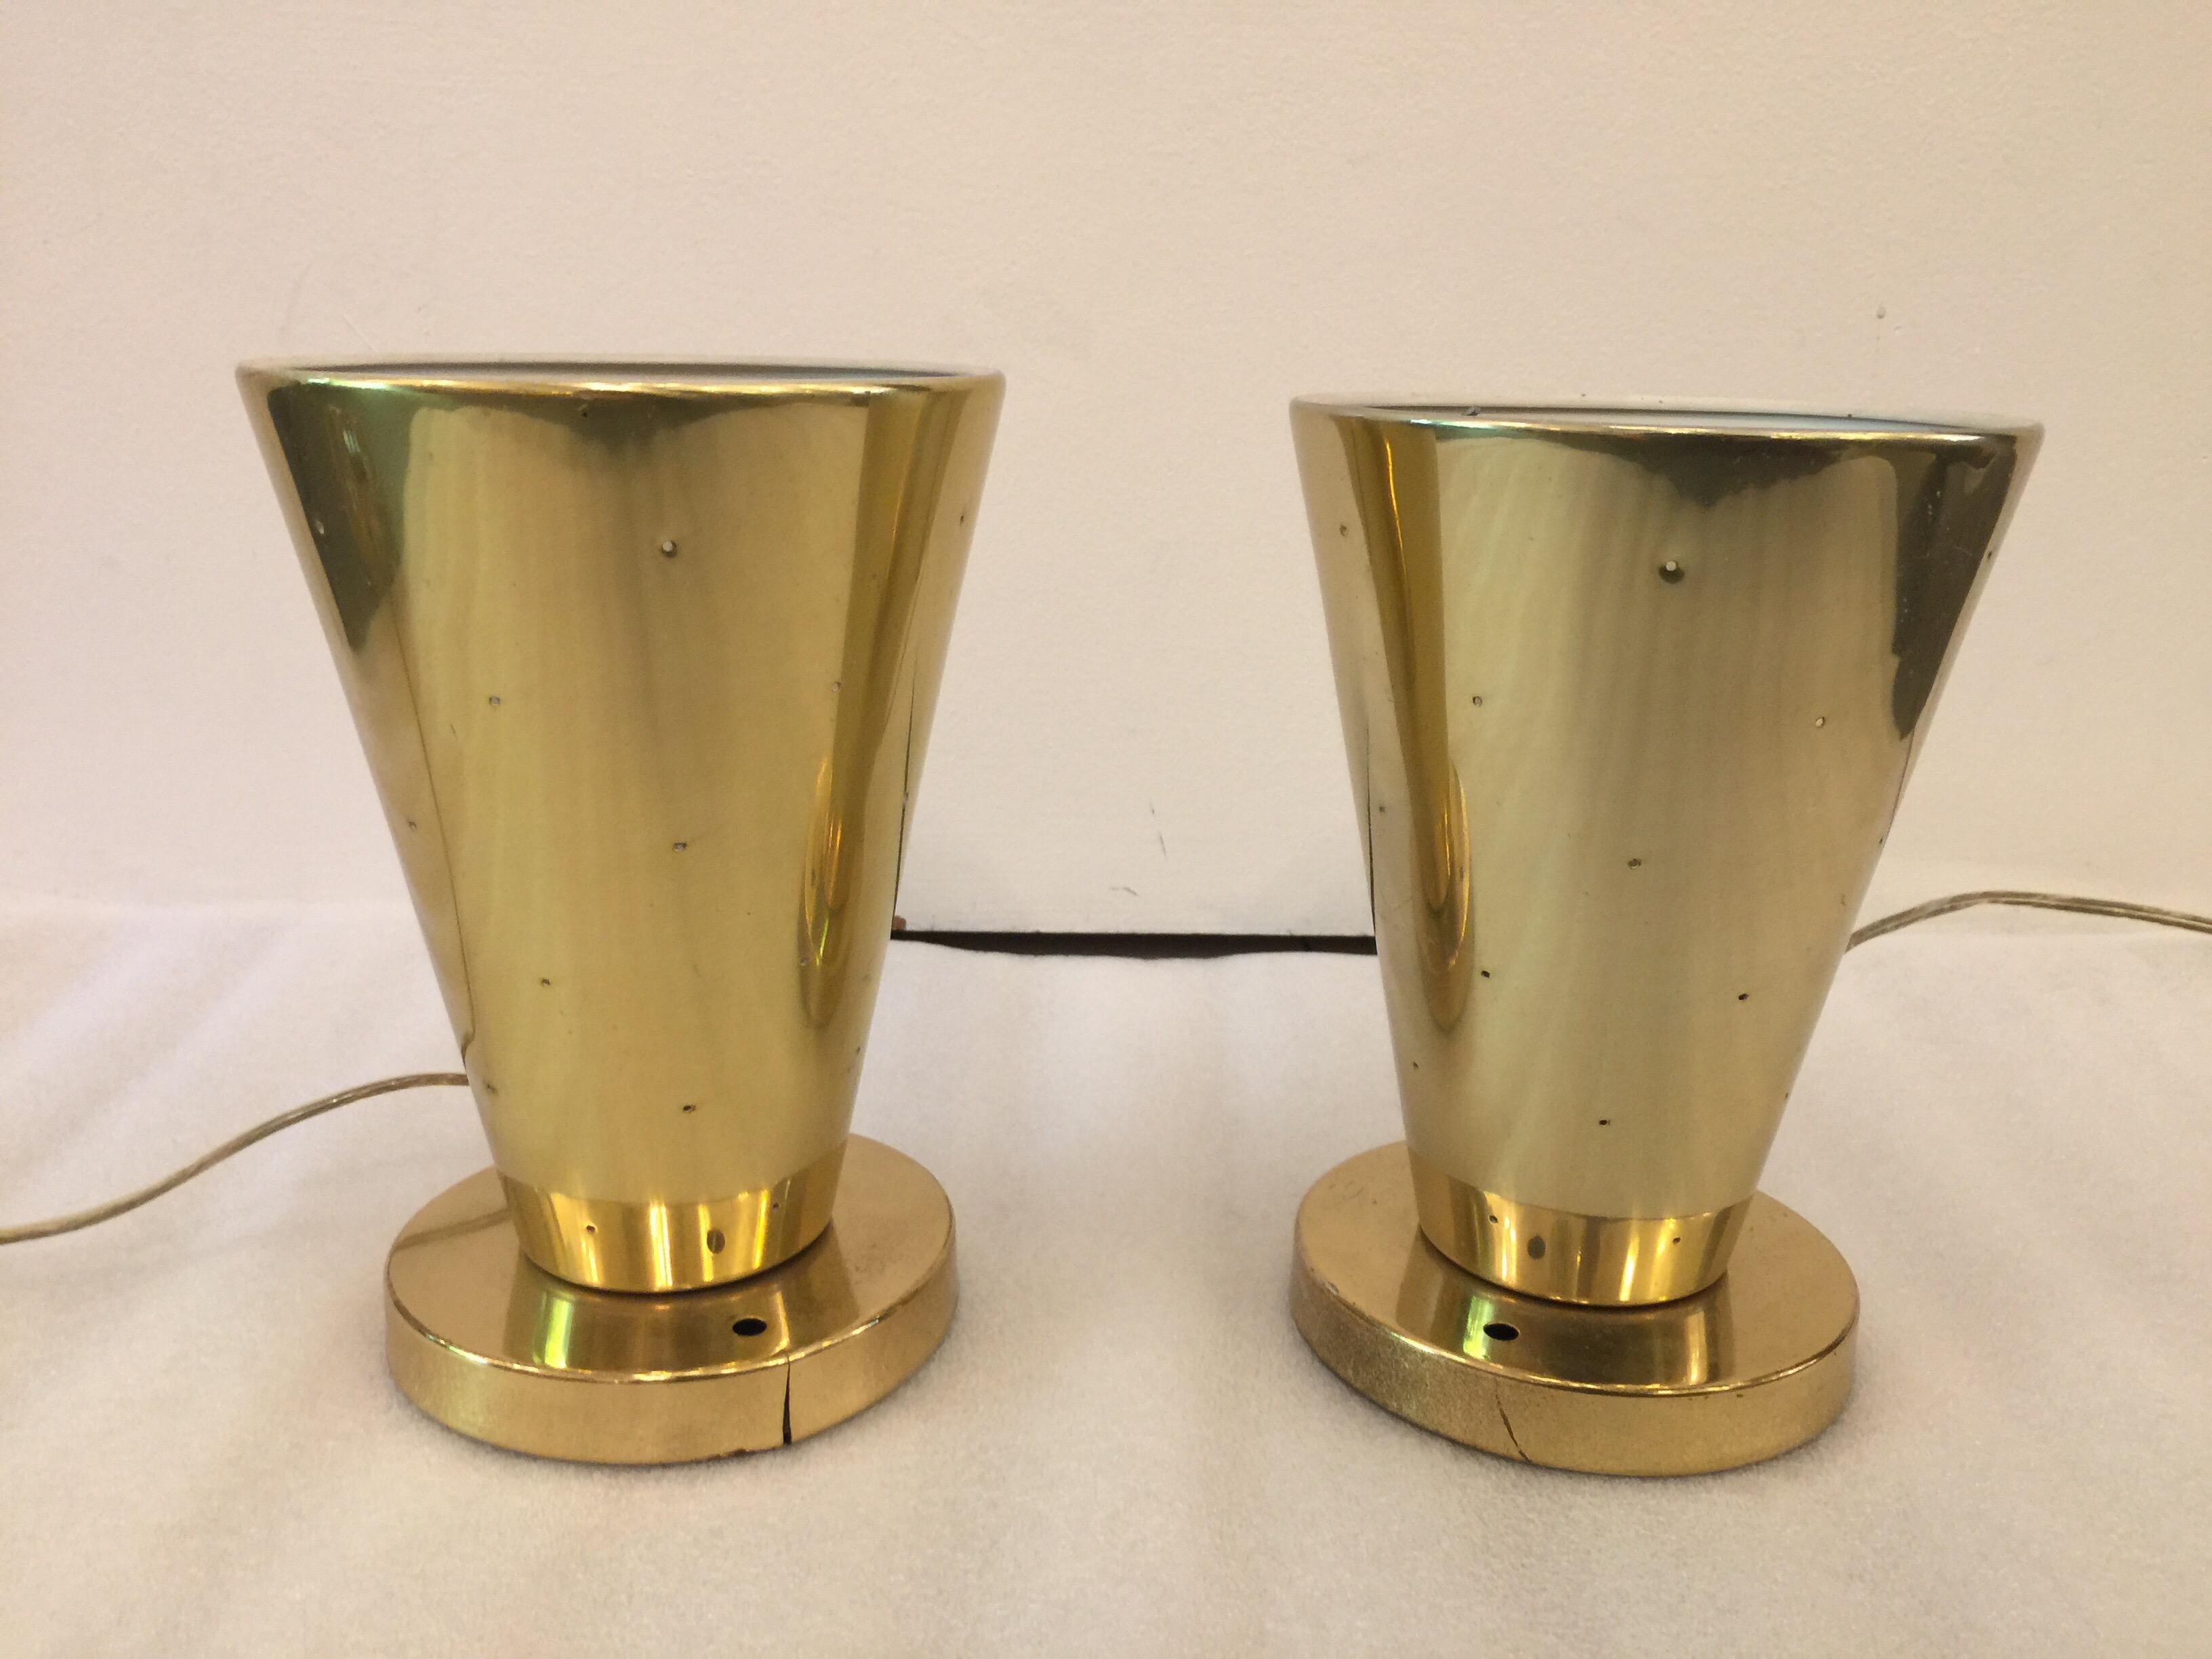 Aluminum Midcentury Gerald Thurston for Lightolier Ceiling Cone Fixtures, Pair